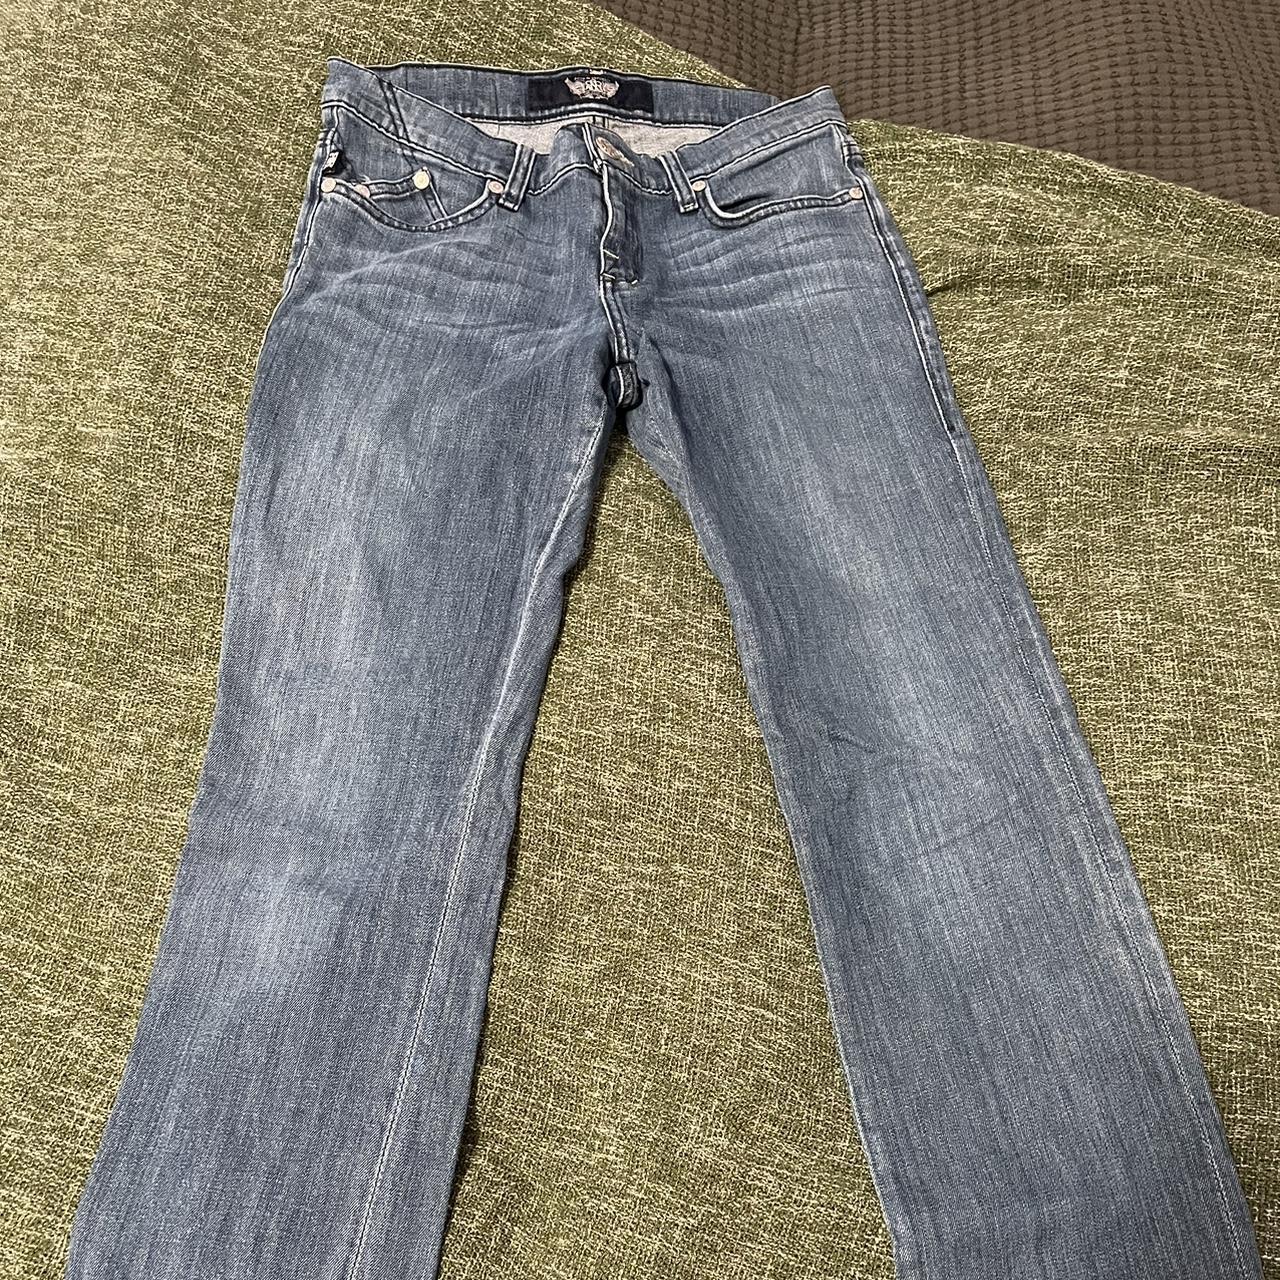 Vintage Skinny, low rise y2k/00s jeans - Depop